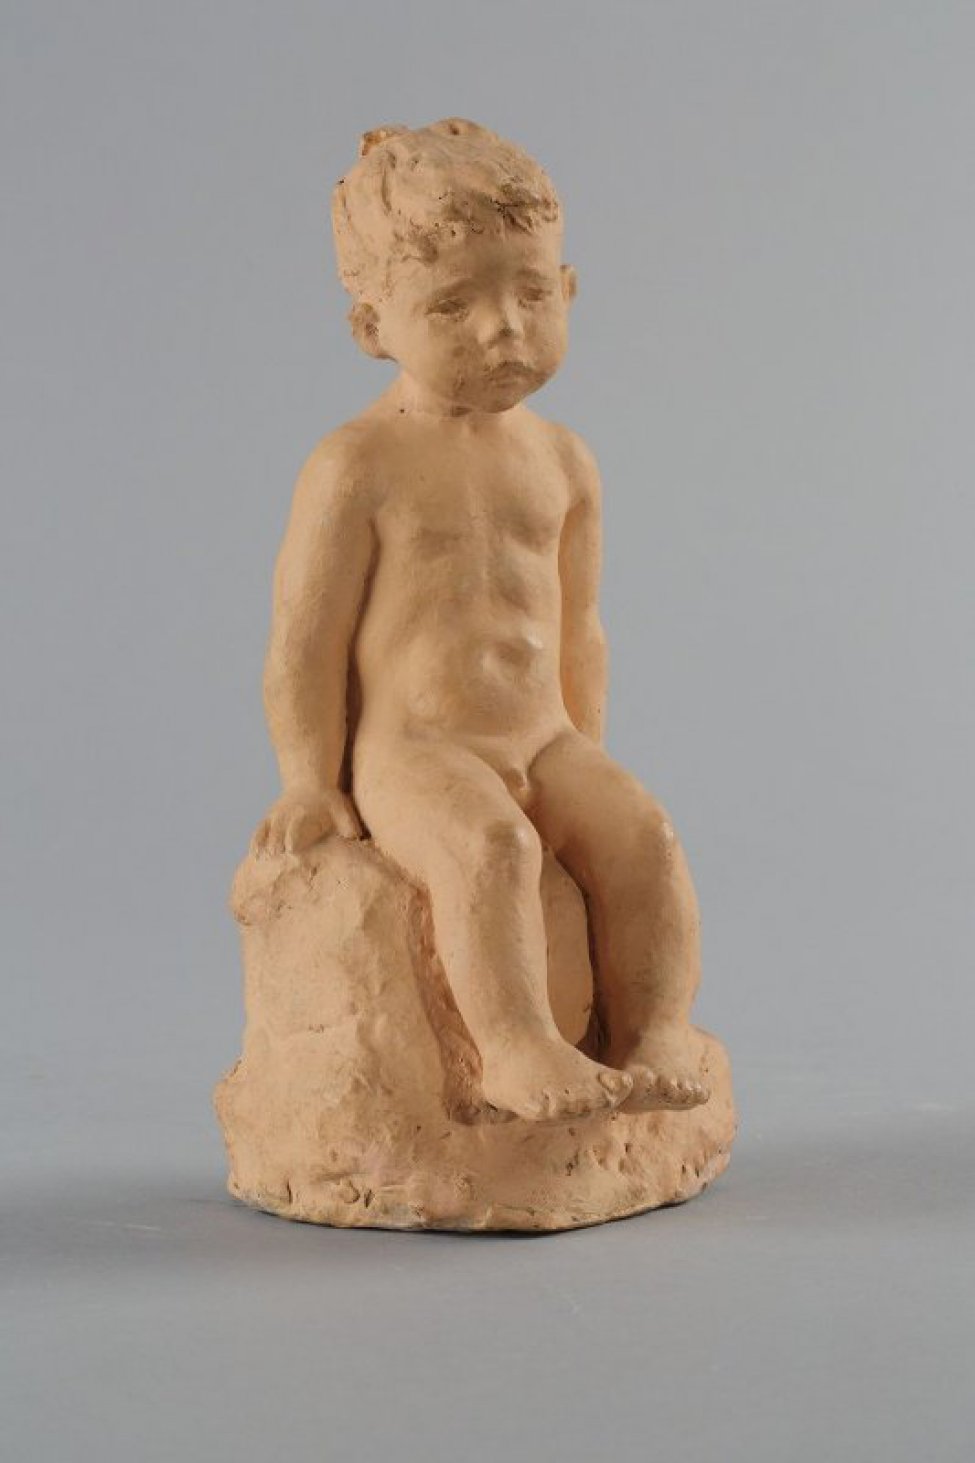 Изображен сидящий на камне обнаженный мальчик, руками опирается на камень, на котором сидит. Голова мальчика с короткой стрижкой наклонена вправо. Ступни ног соприкасаются большими пальцами.